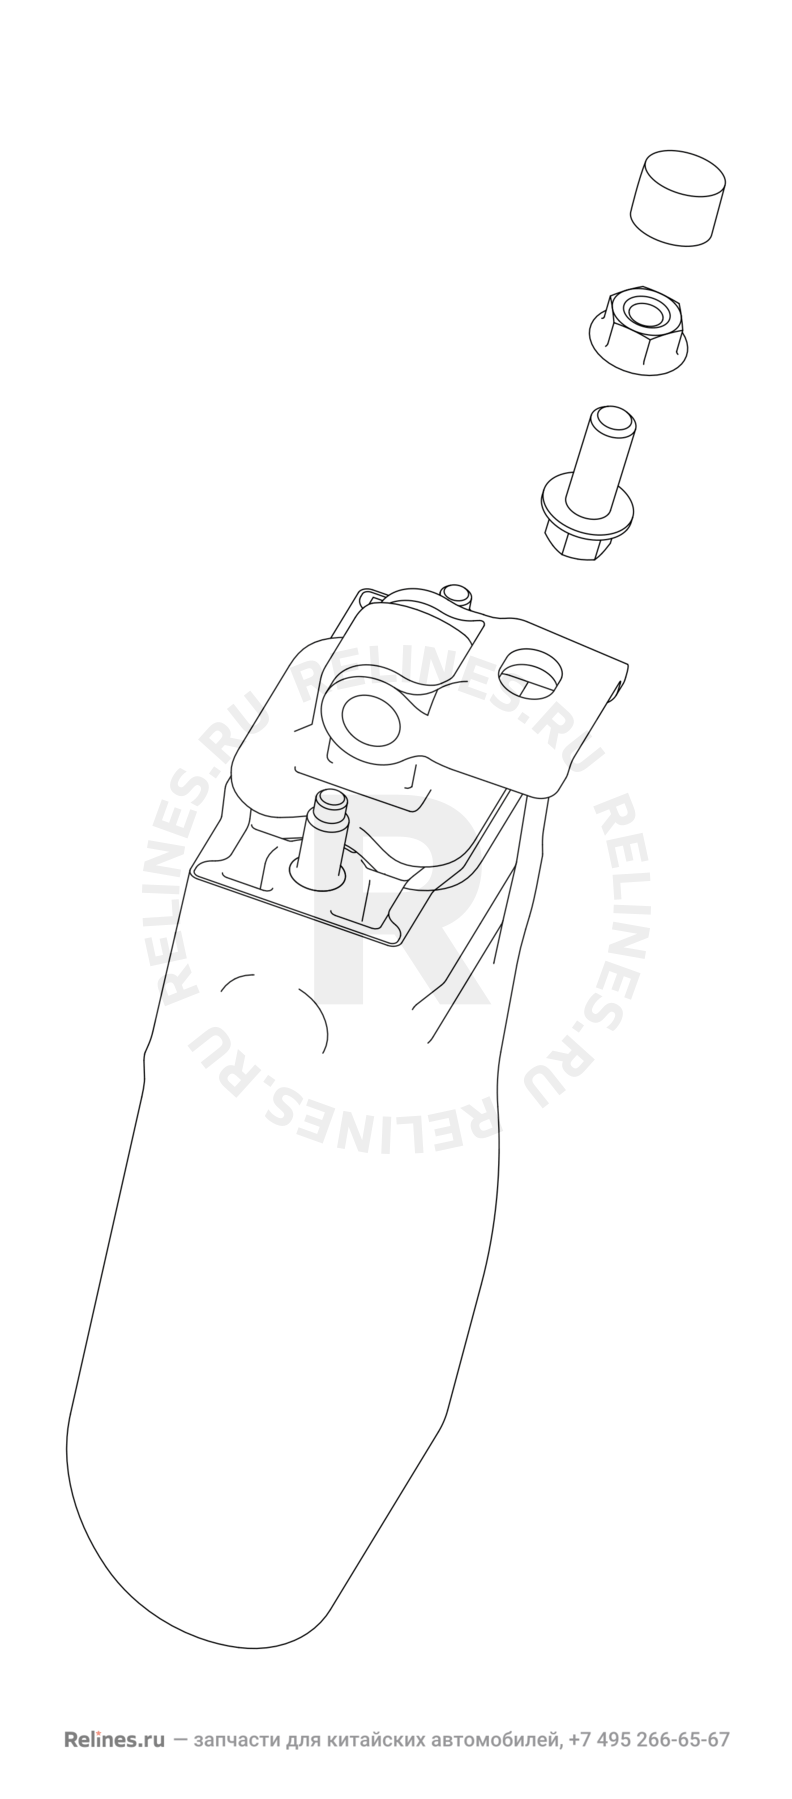 Запчасти Chery Tiggo 7 Поколение I (2016)  — Ограничитель двери — схема